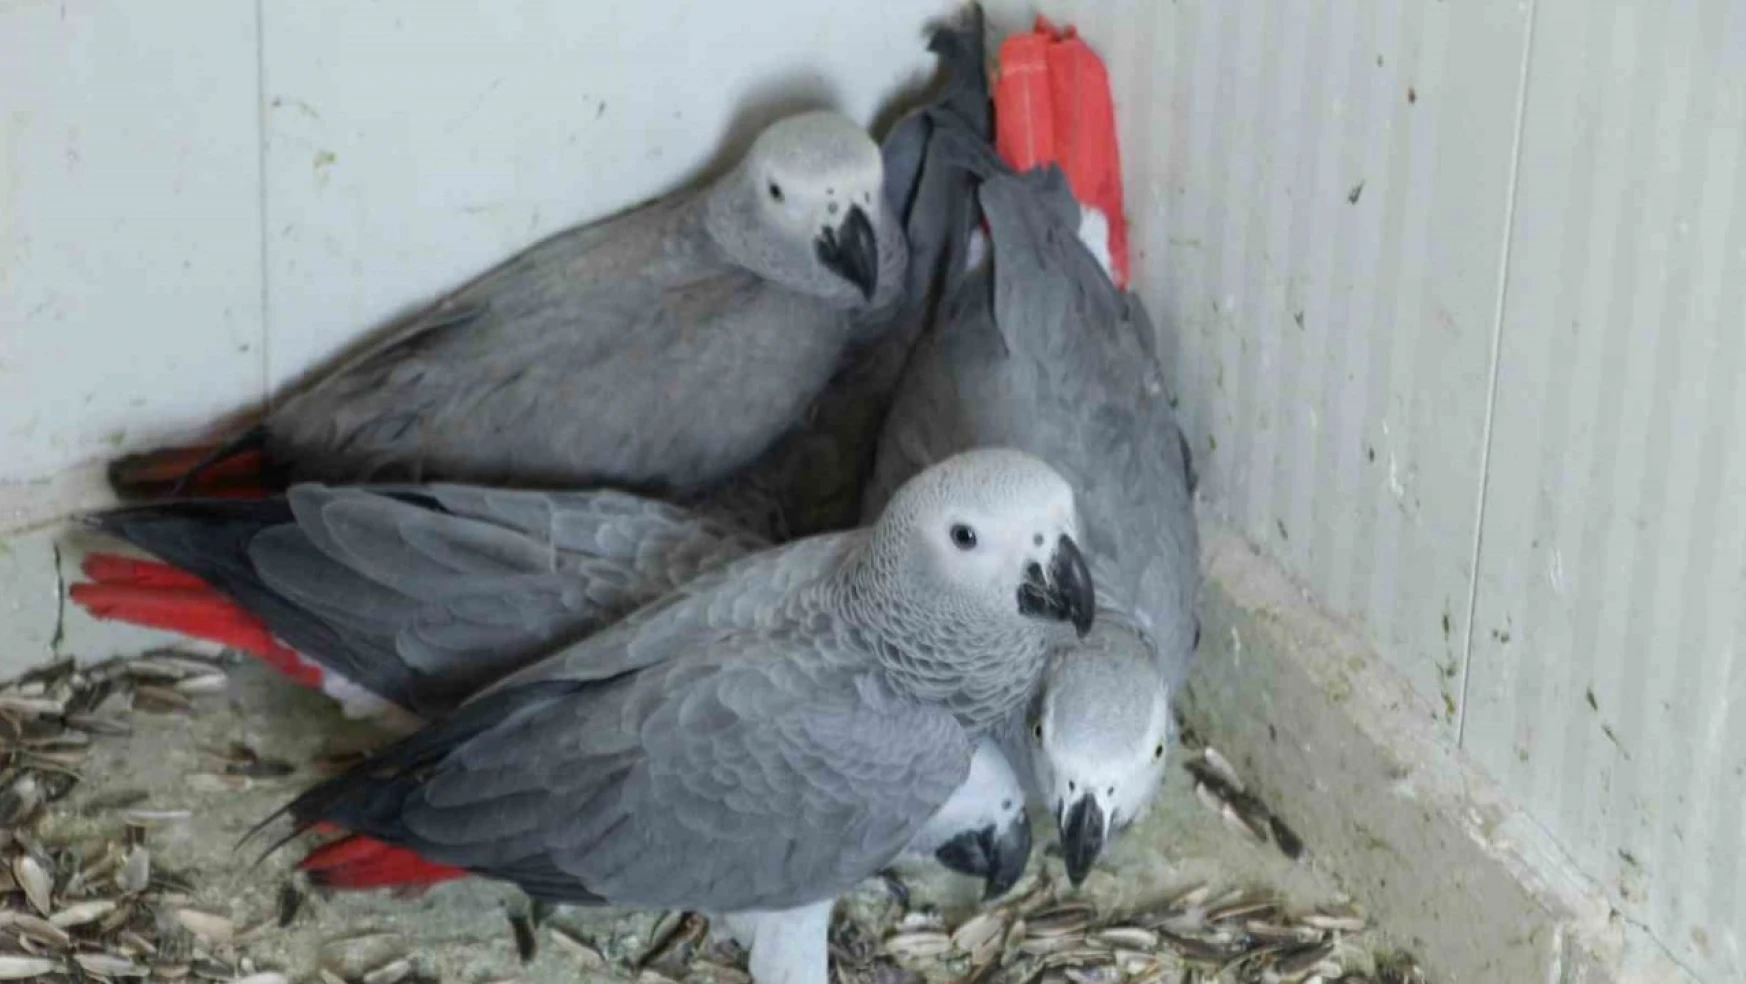 Şırnak'a yasa dışı yollarla getirilen 5 papağan ele geçirildi